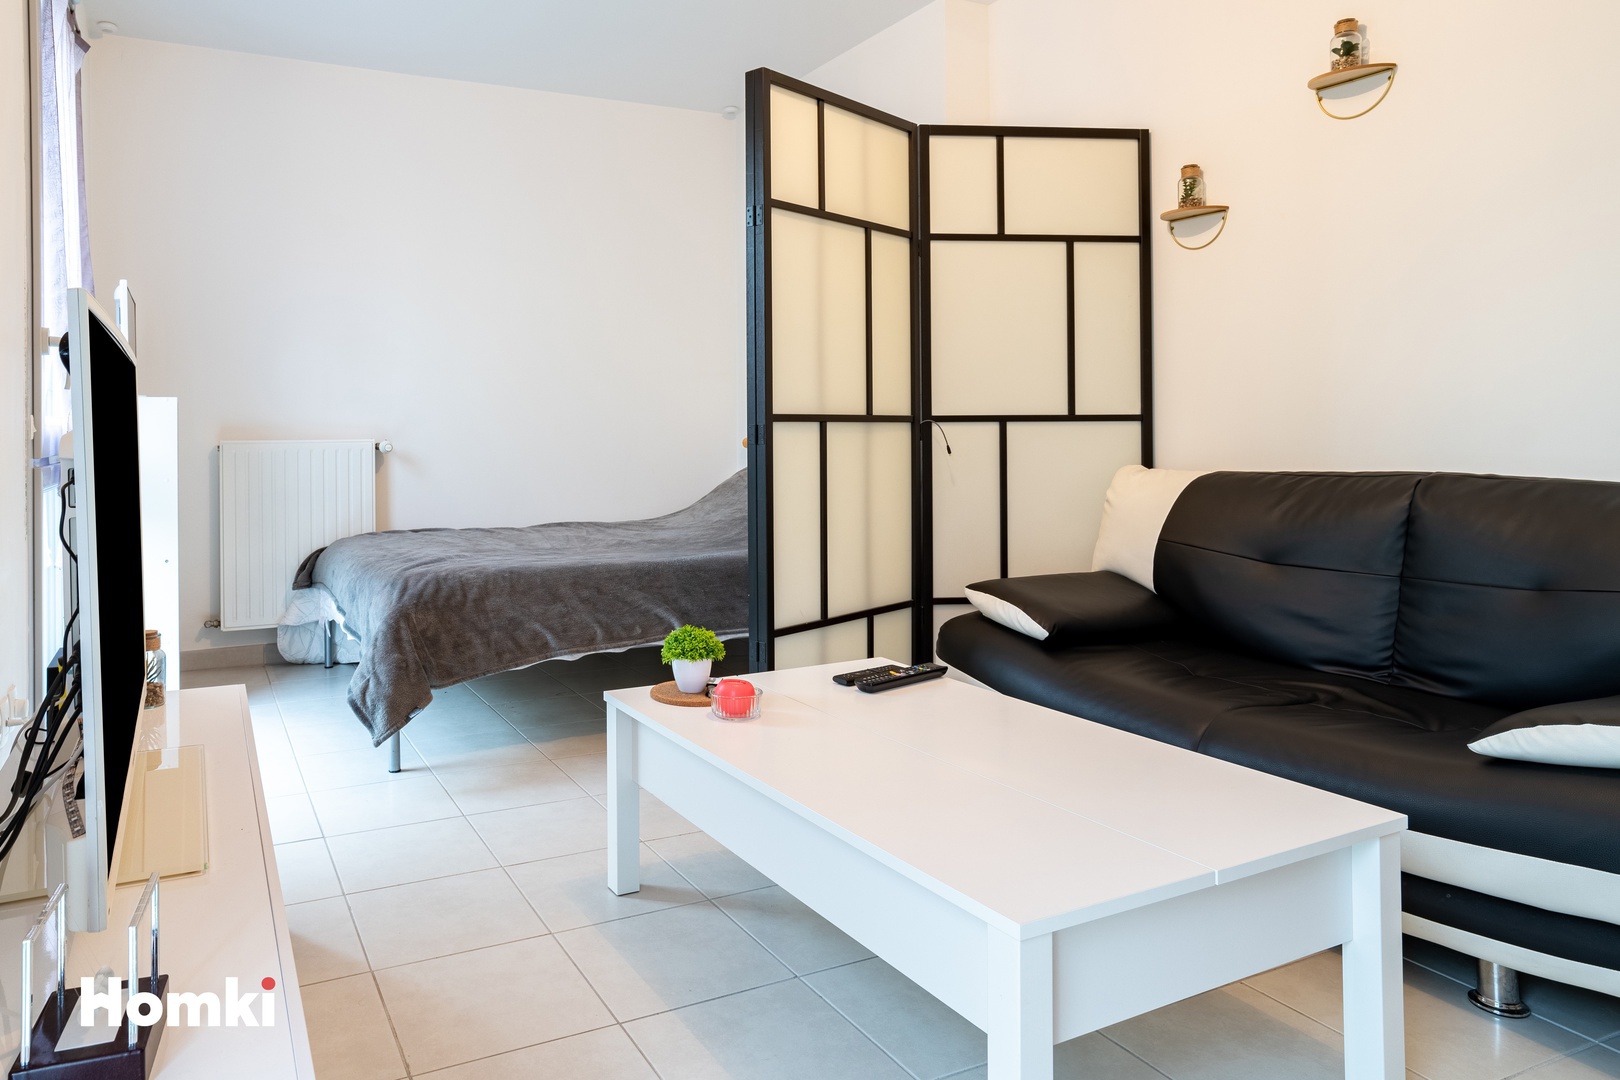 Homki - Vente Appartement  de 35.0 m² à La Chapelle-sur-Erdre 44240